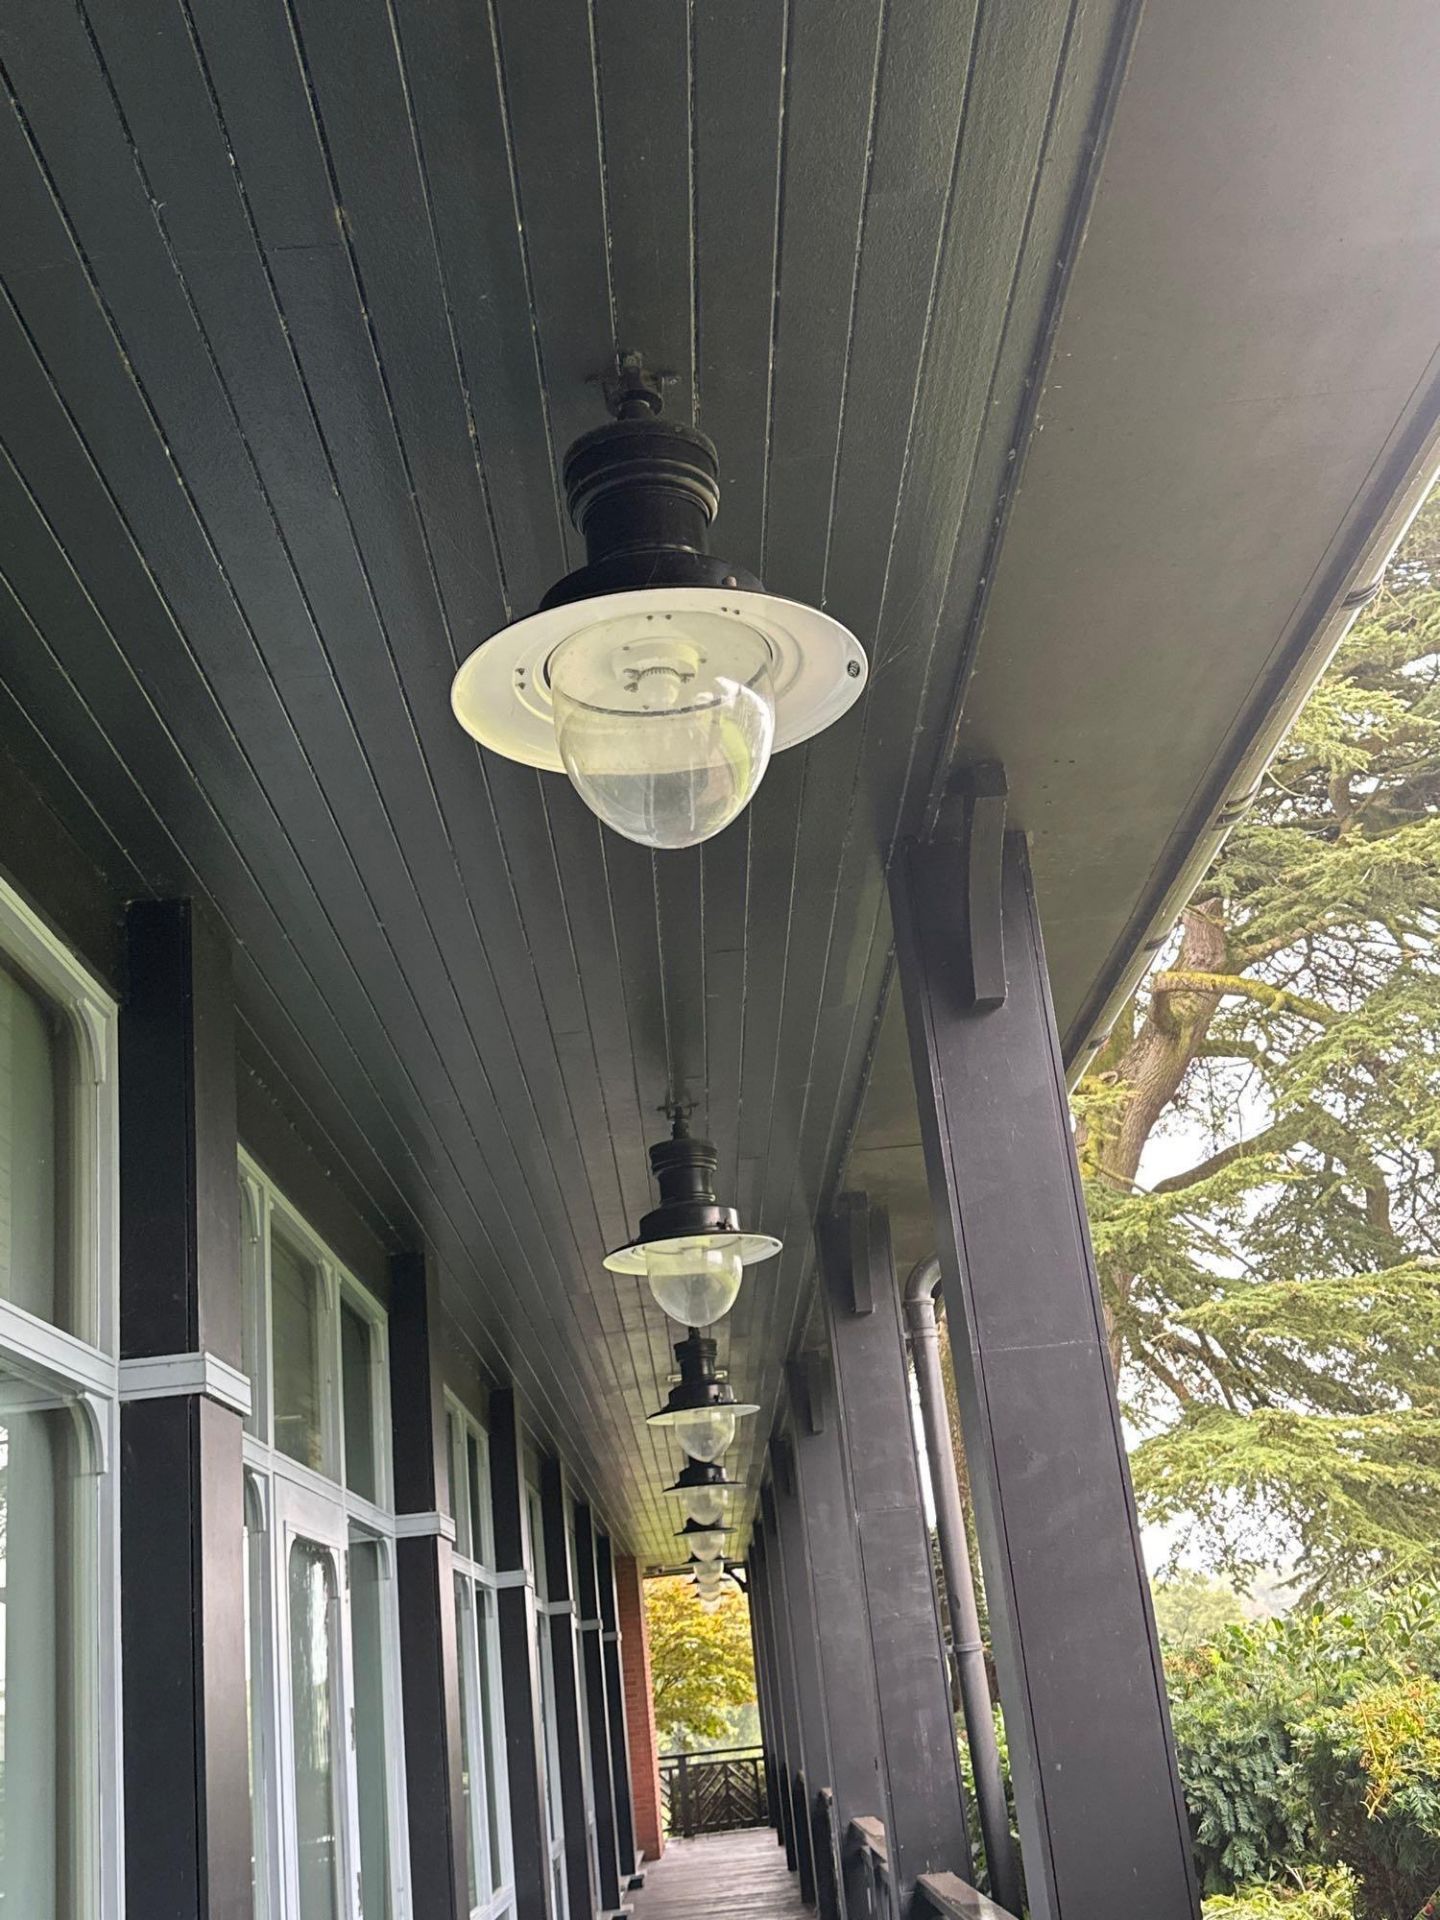 2 x William Sugg & Co Tunbridge decorative luminaire pendant IP65 rated 680mm ( Location: Garden)